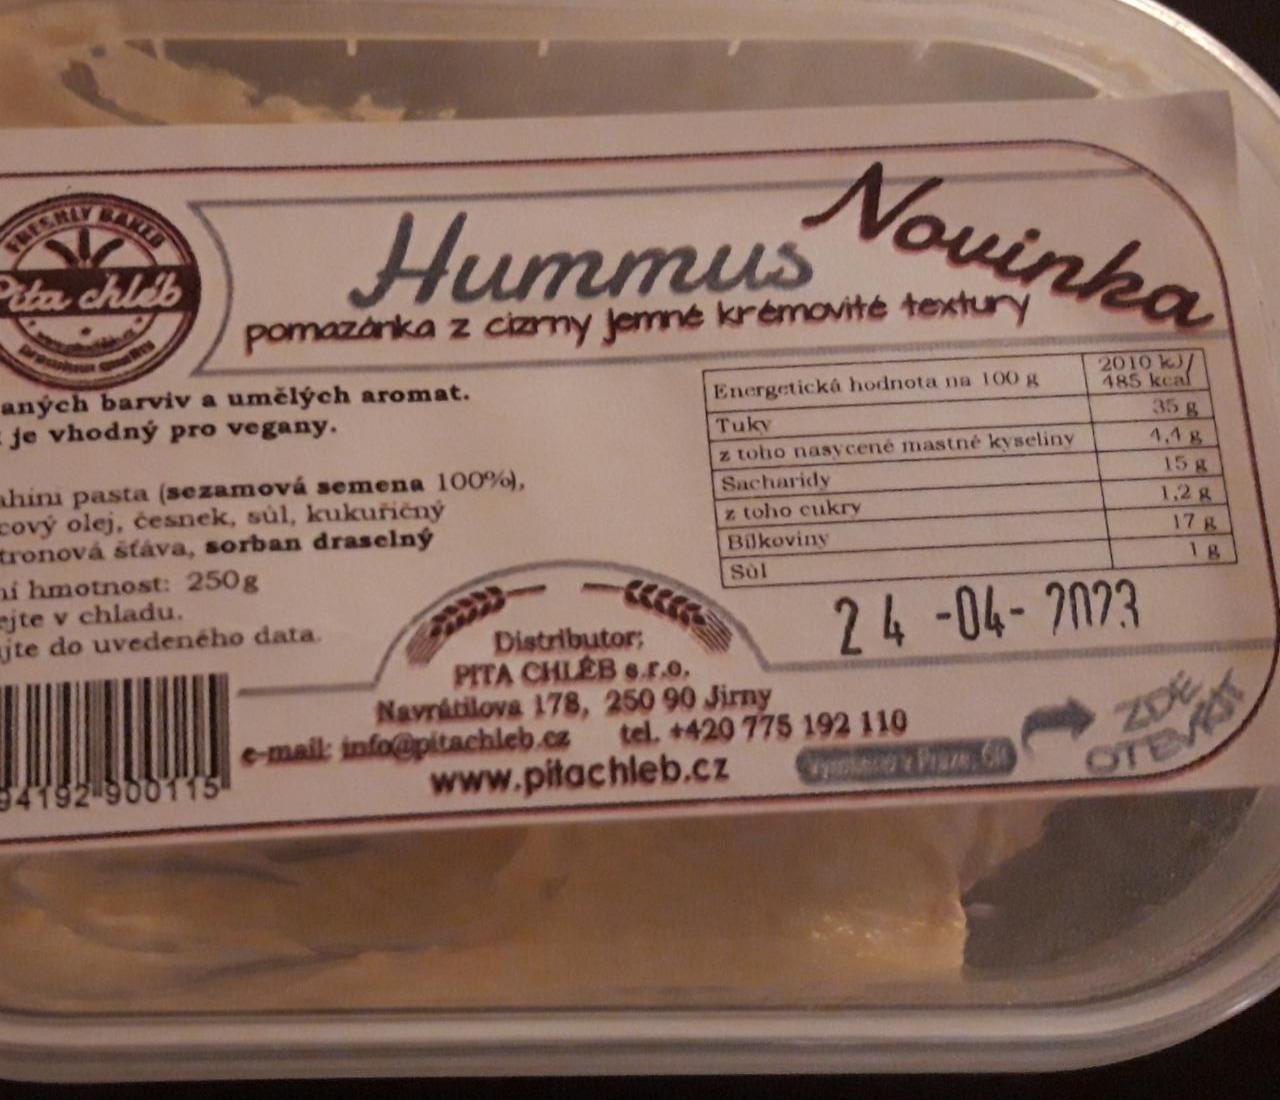 Fotografie - Hummus pomazánka z cizrny jemné krémovité textury Pita chléb